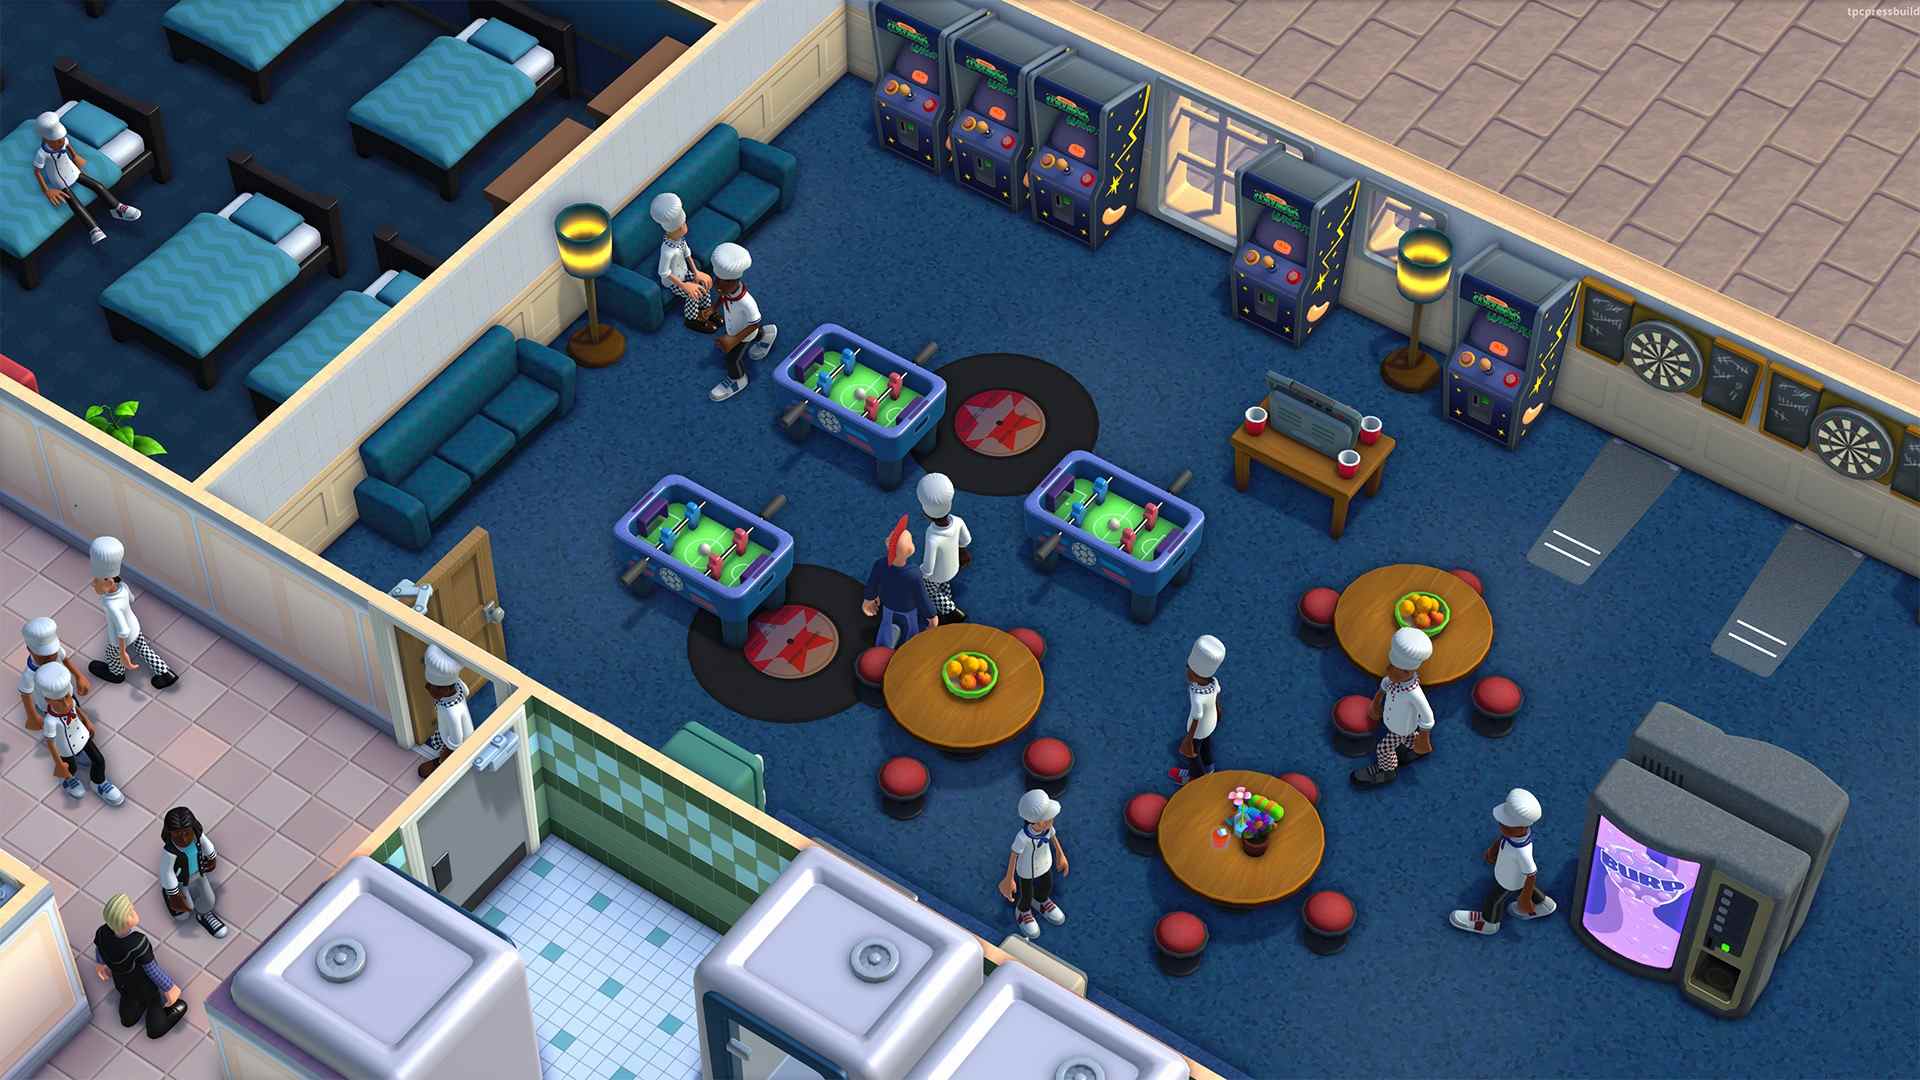 Aperçu de Two Point Campus sur PC Sega Two Point Studios, une simulation de simulation de gestion amusante mais pas hardcore qui devrait délimiter le gameplay et l'esthétique